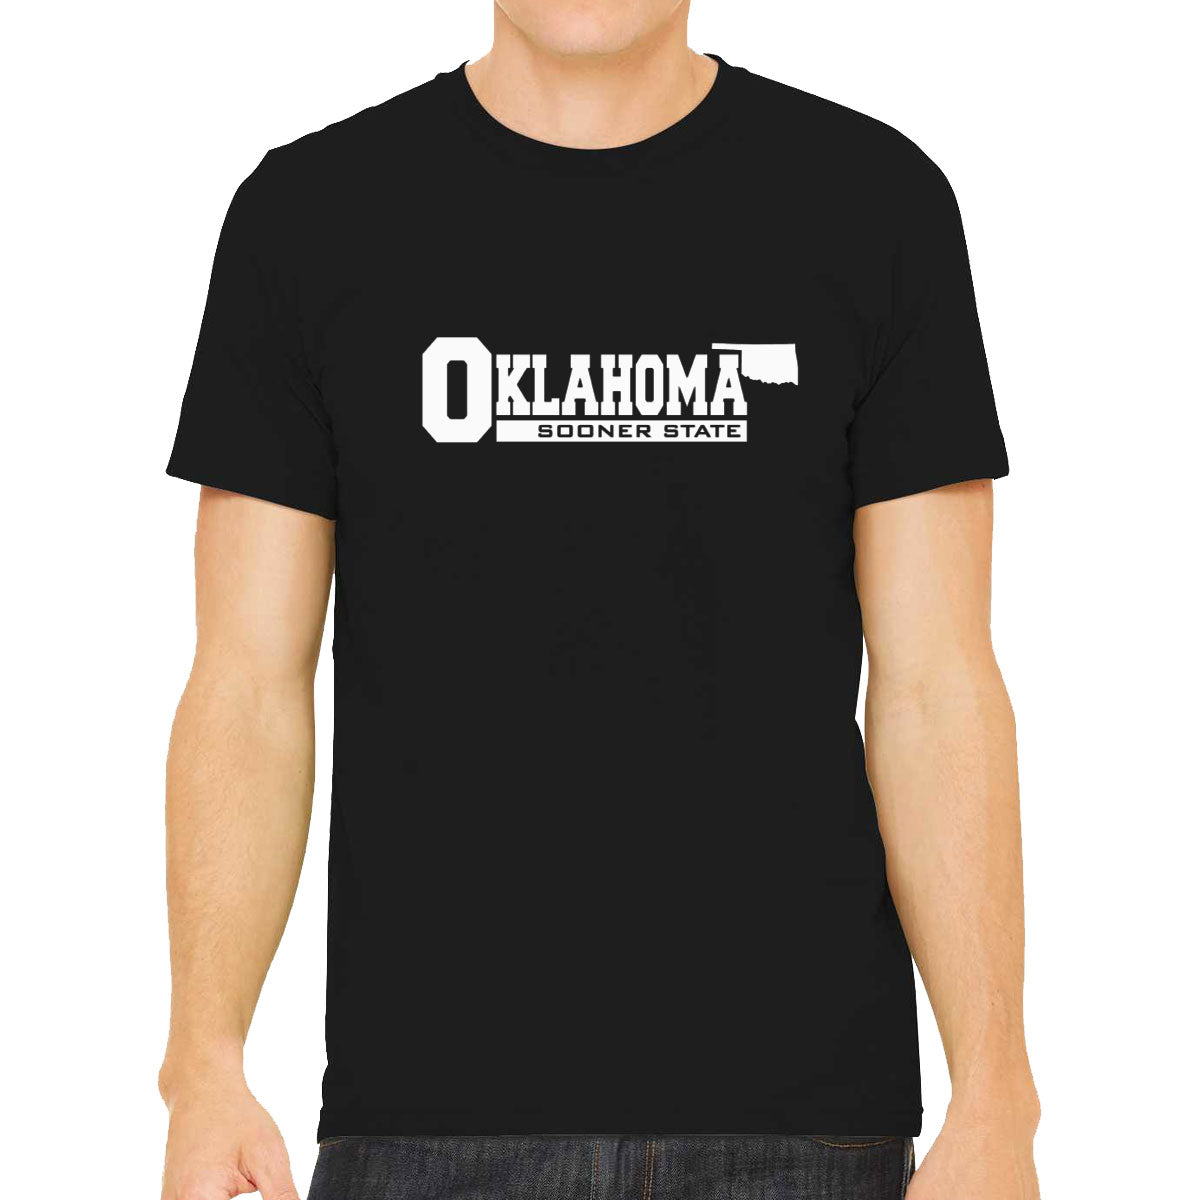 Oklahoma Sooner State Men's T-shirt